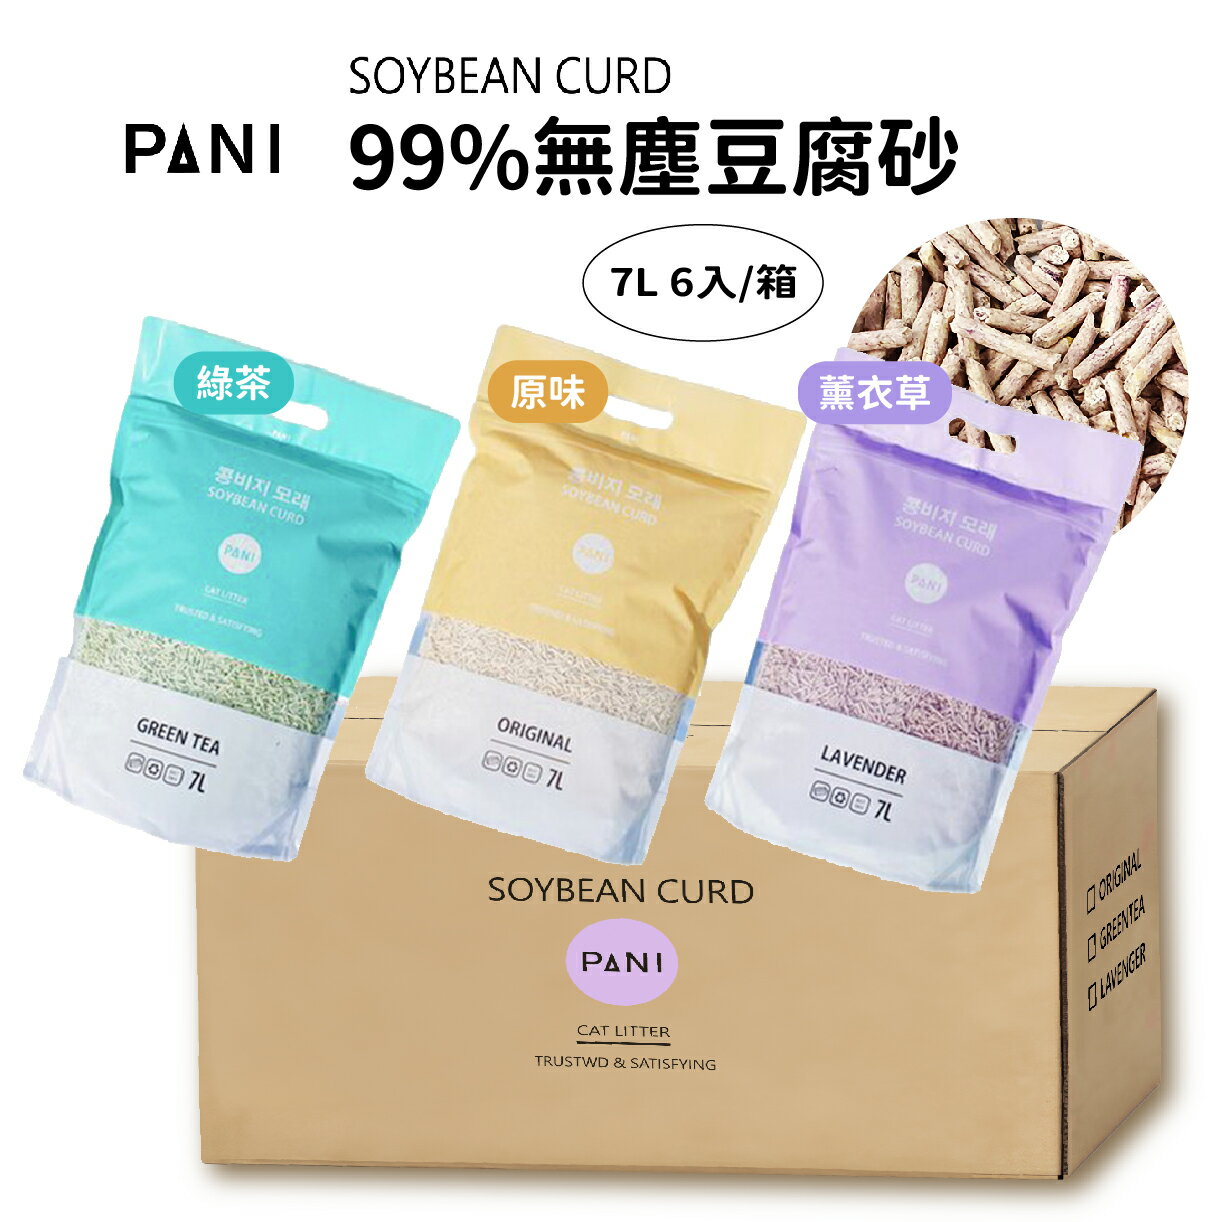 [免運] PANI 豆腐砂 貓砂 原味/薰衣草/綠茶 7L (2.8kg) x 6 包 / 箱 | 艾爾發寵物